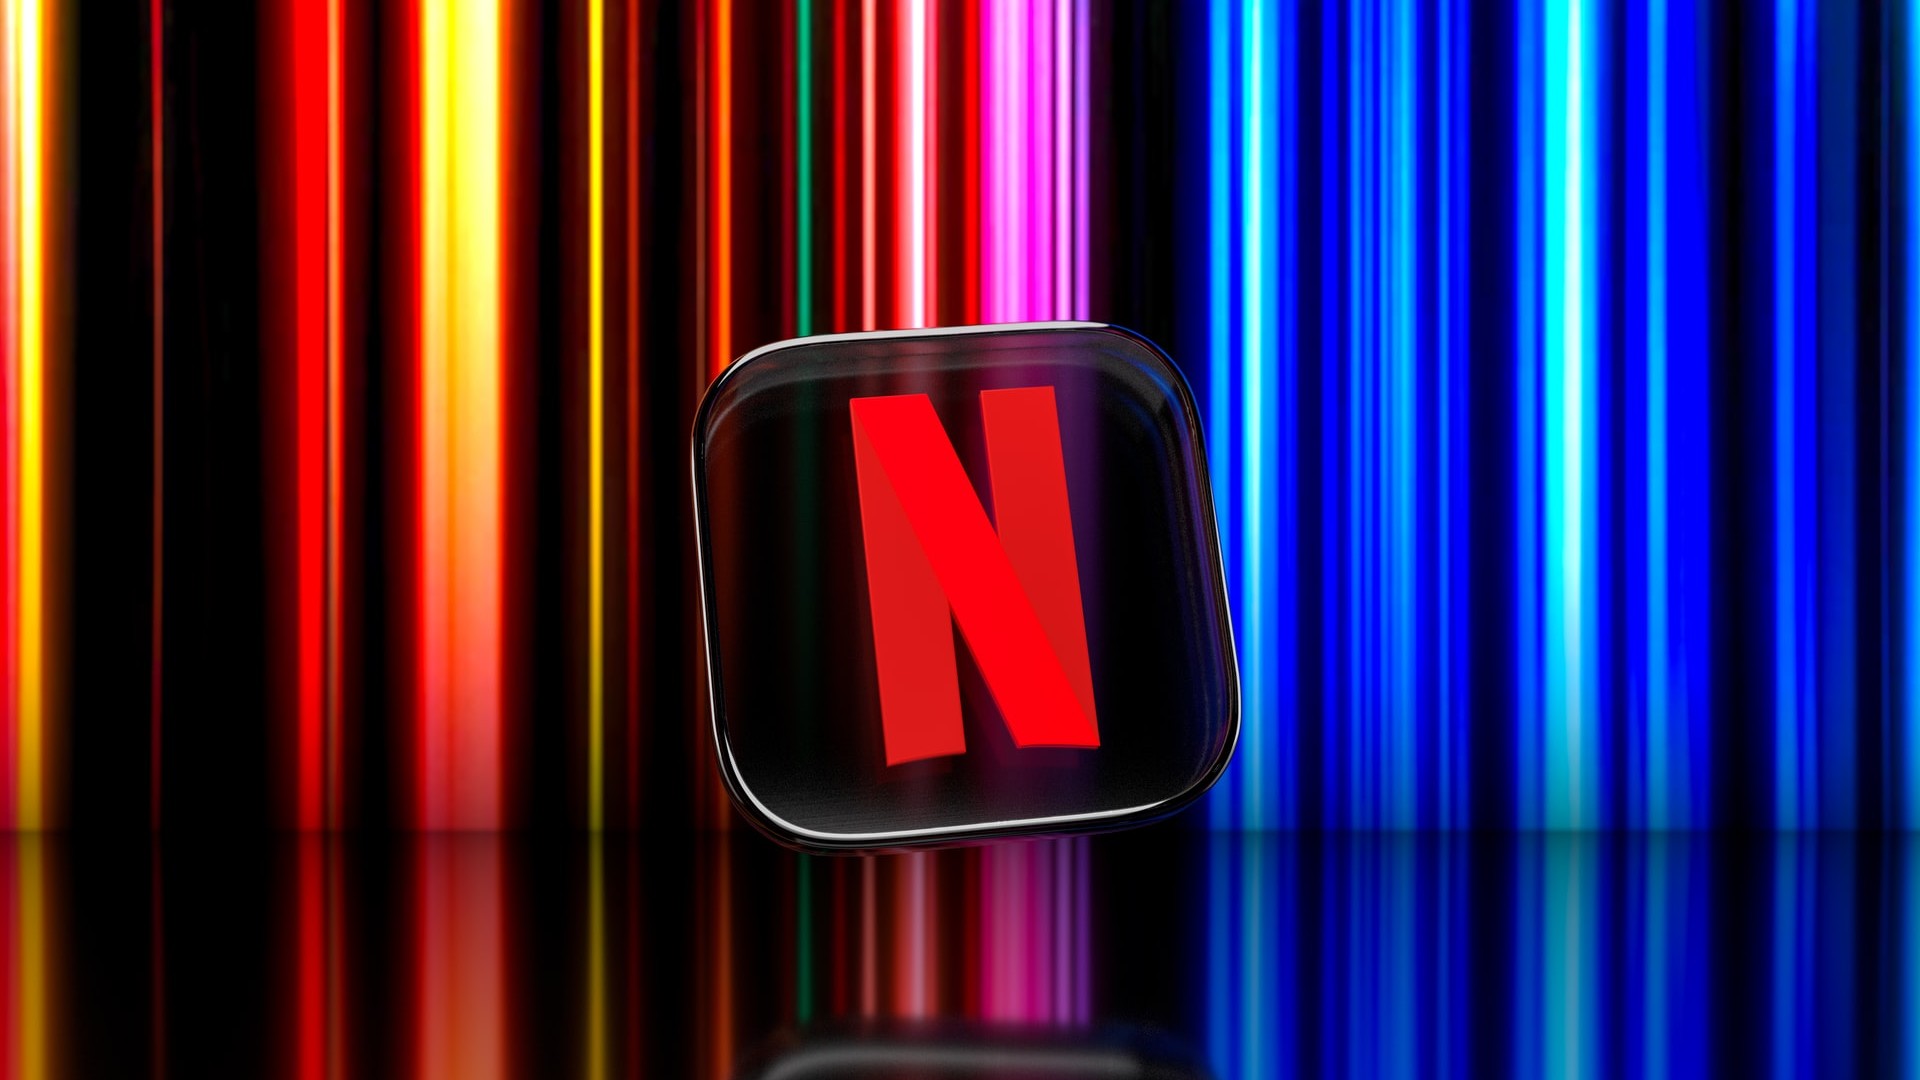 5 lançamentos especiais da Netflix em outubro - Notícias sobre